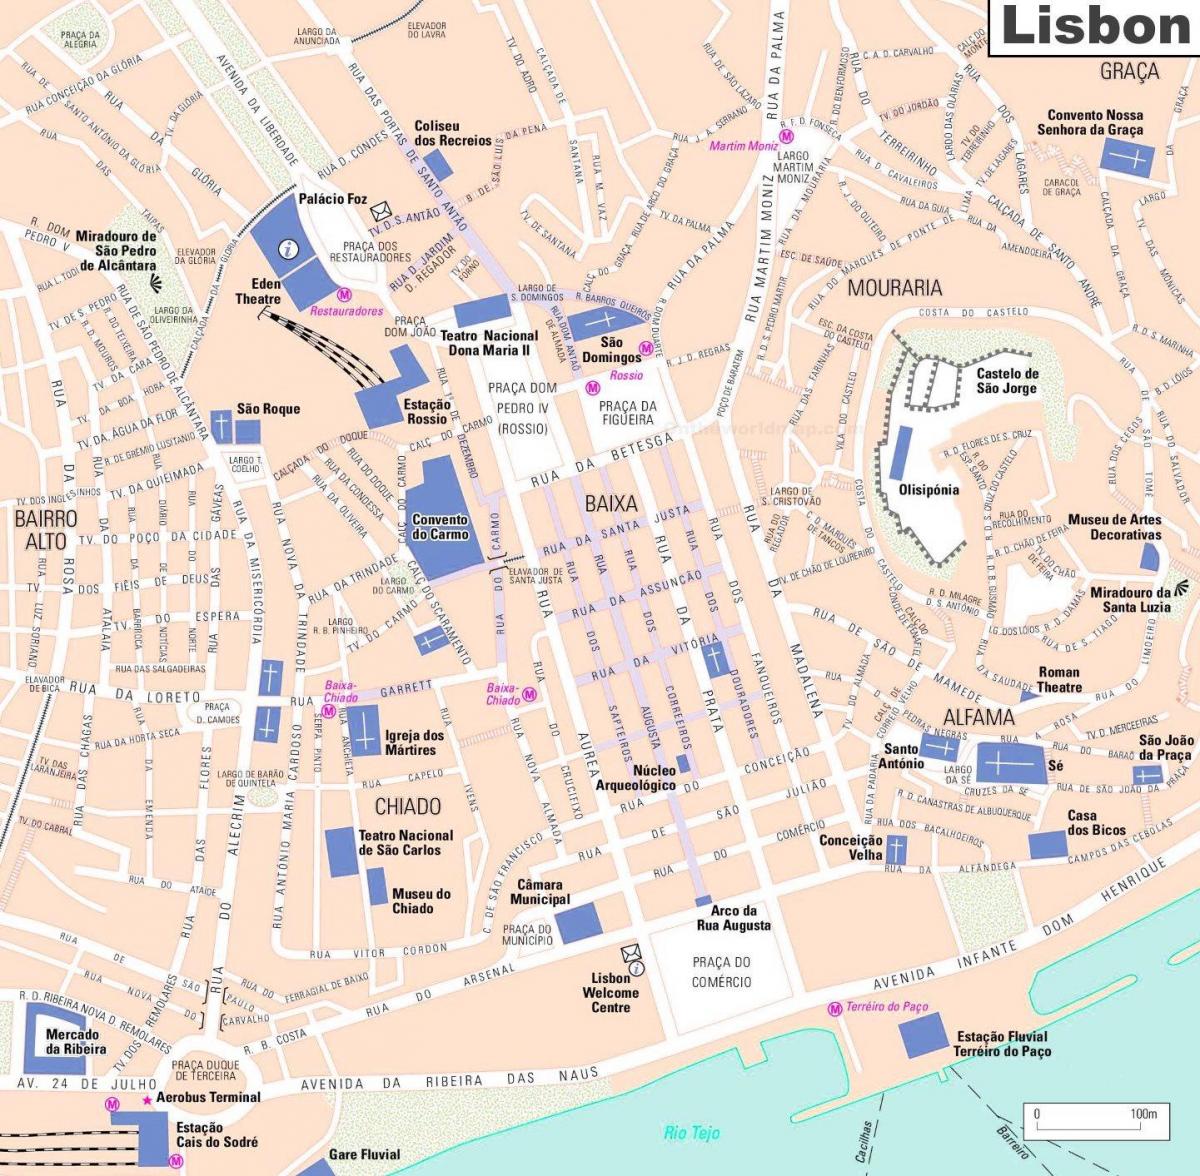 Karte von Lissabon, portugal, Stadtzentrum